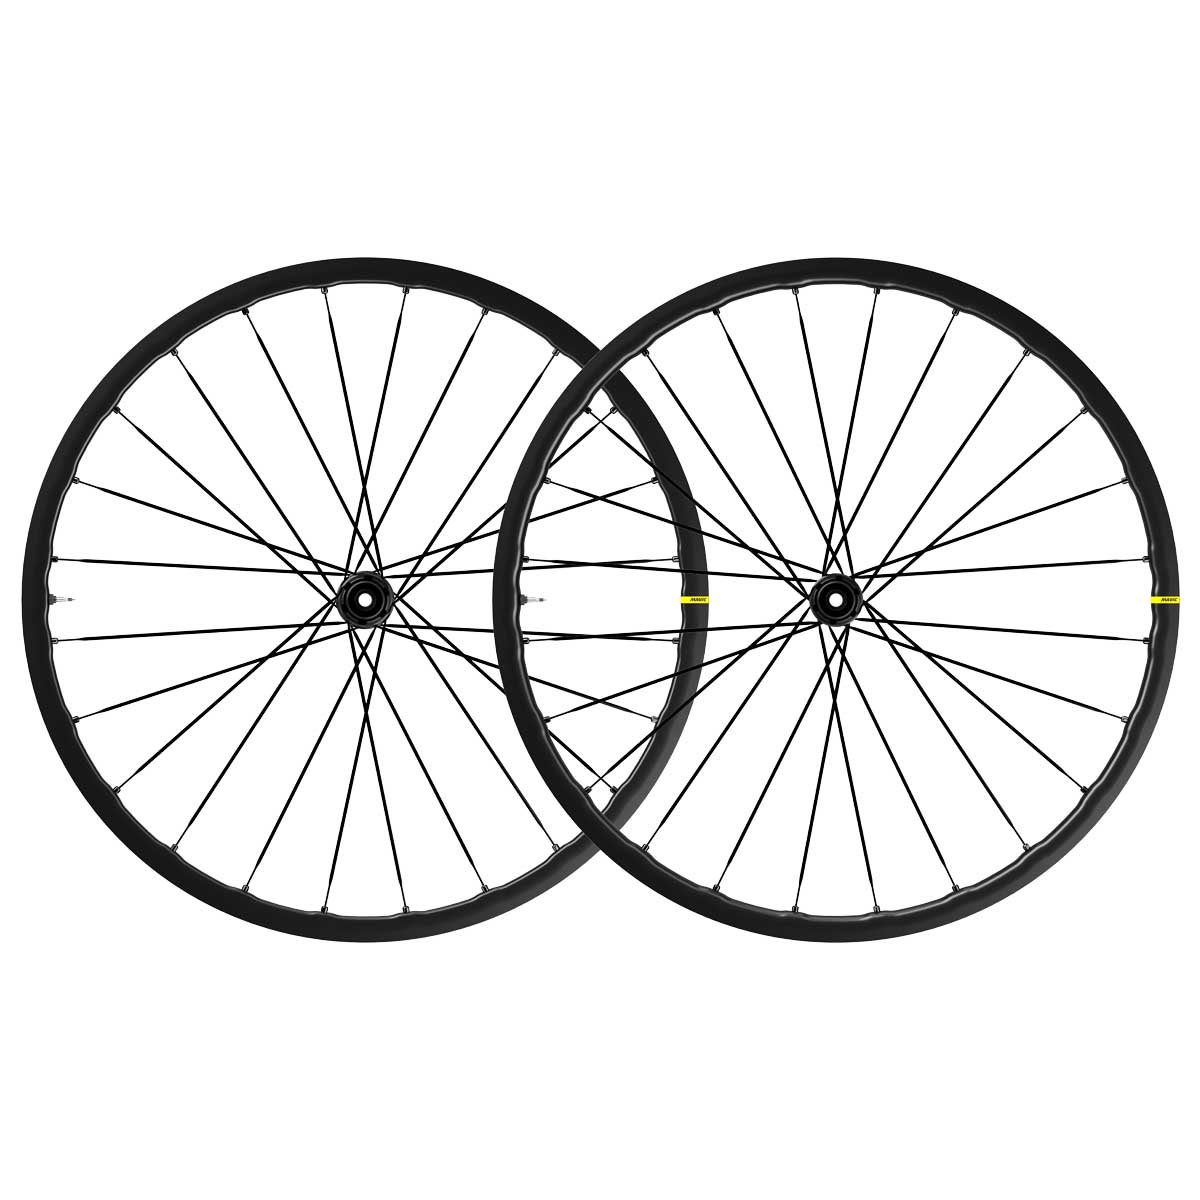 Mavic Ksyrium SL disc wheels